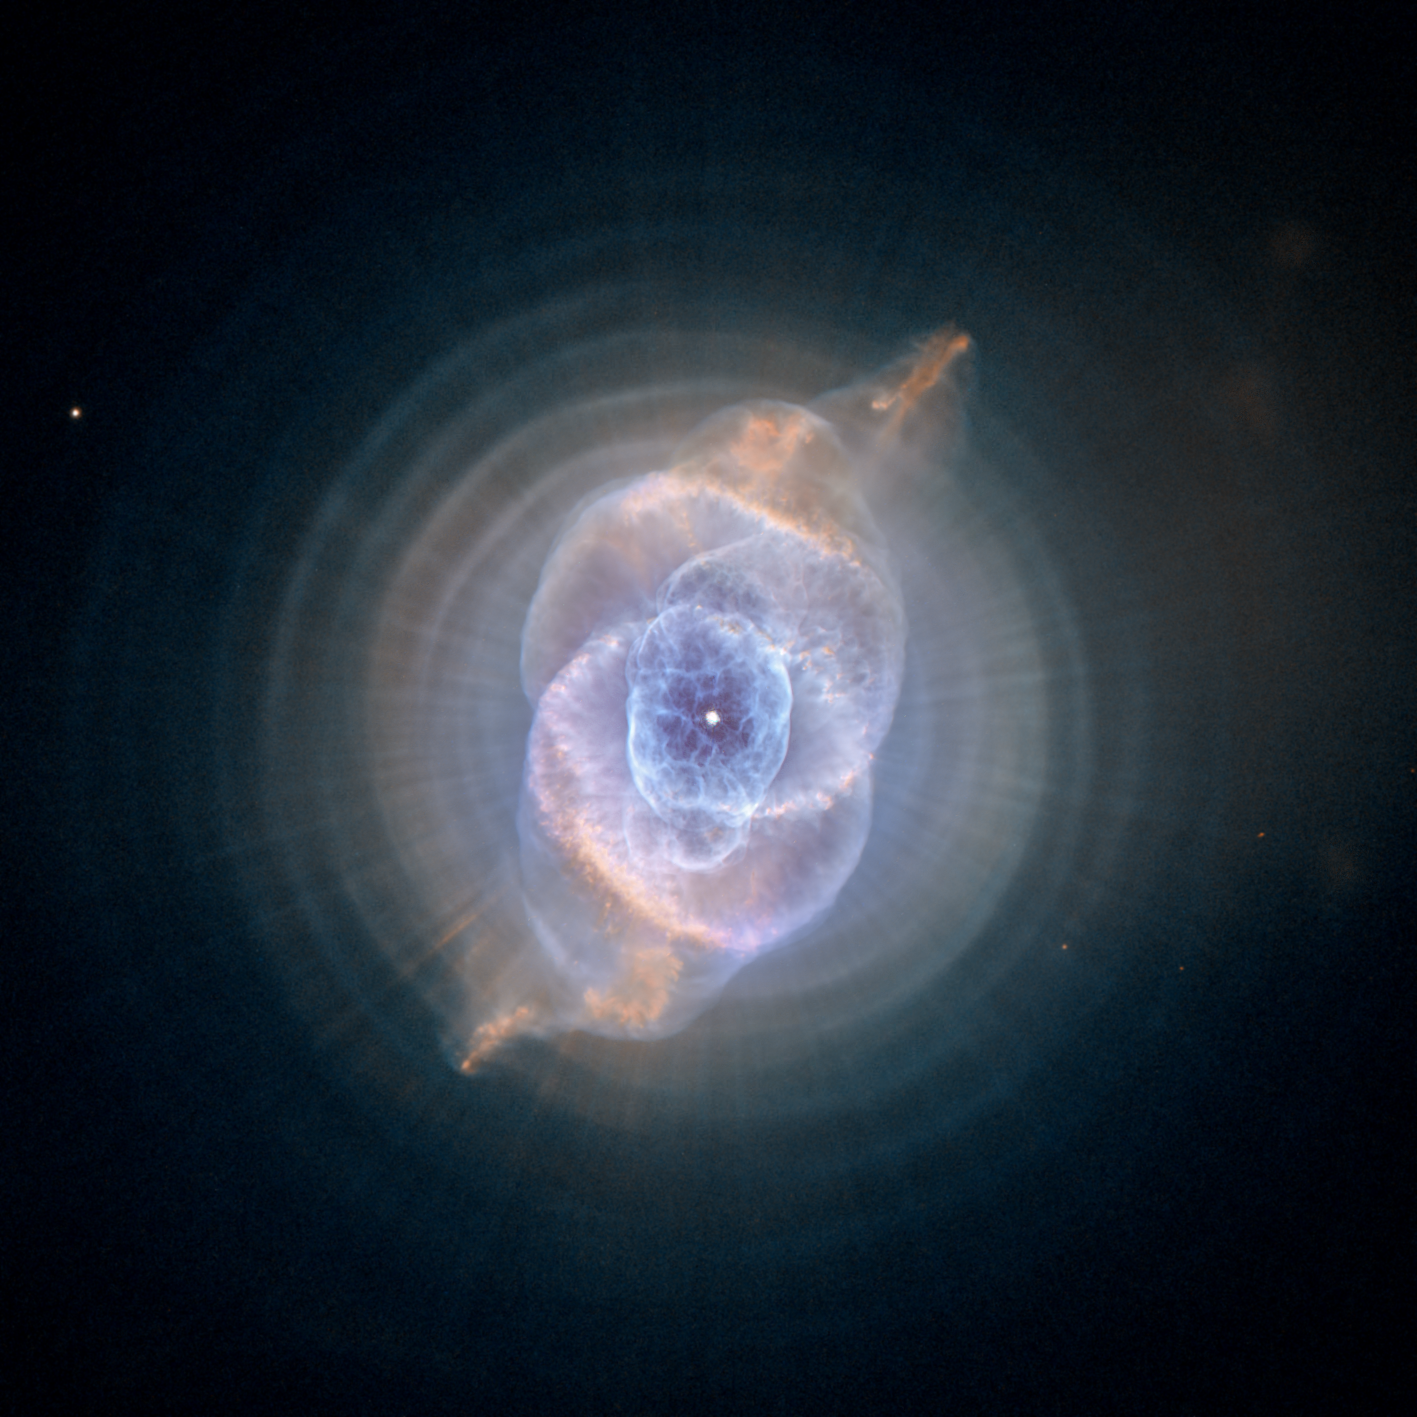 Image of Cat's Eye Nebula